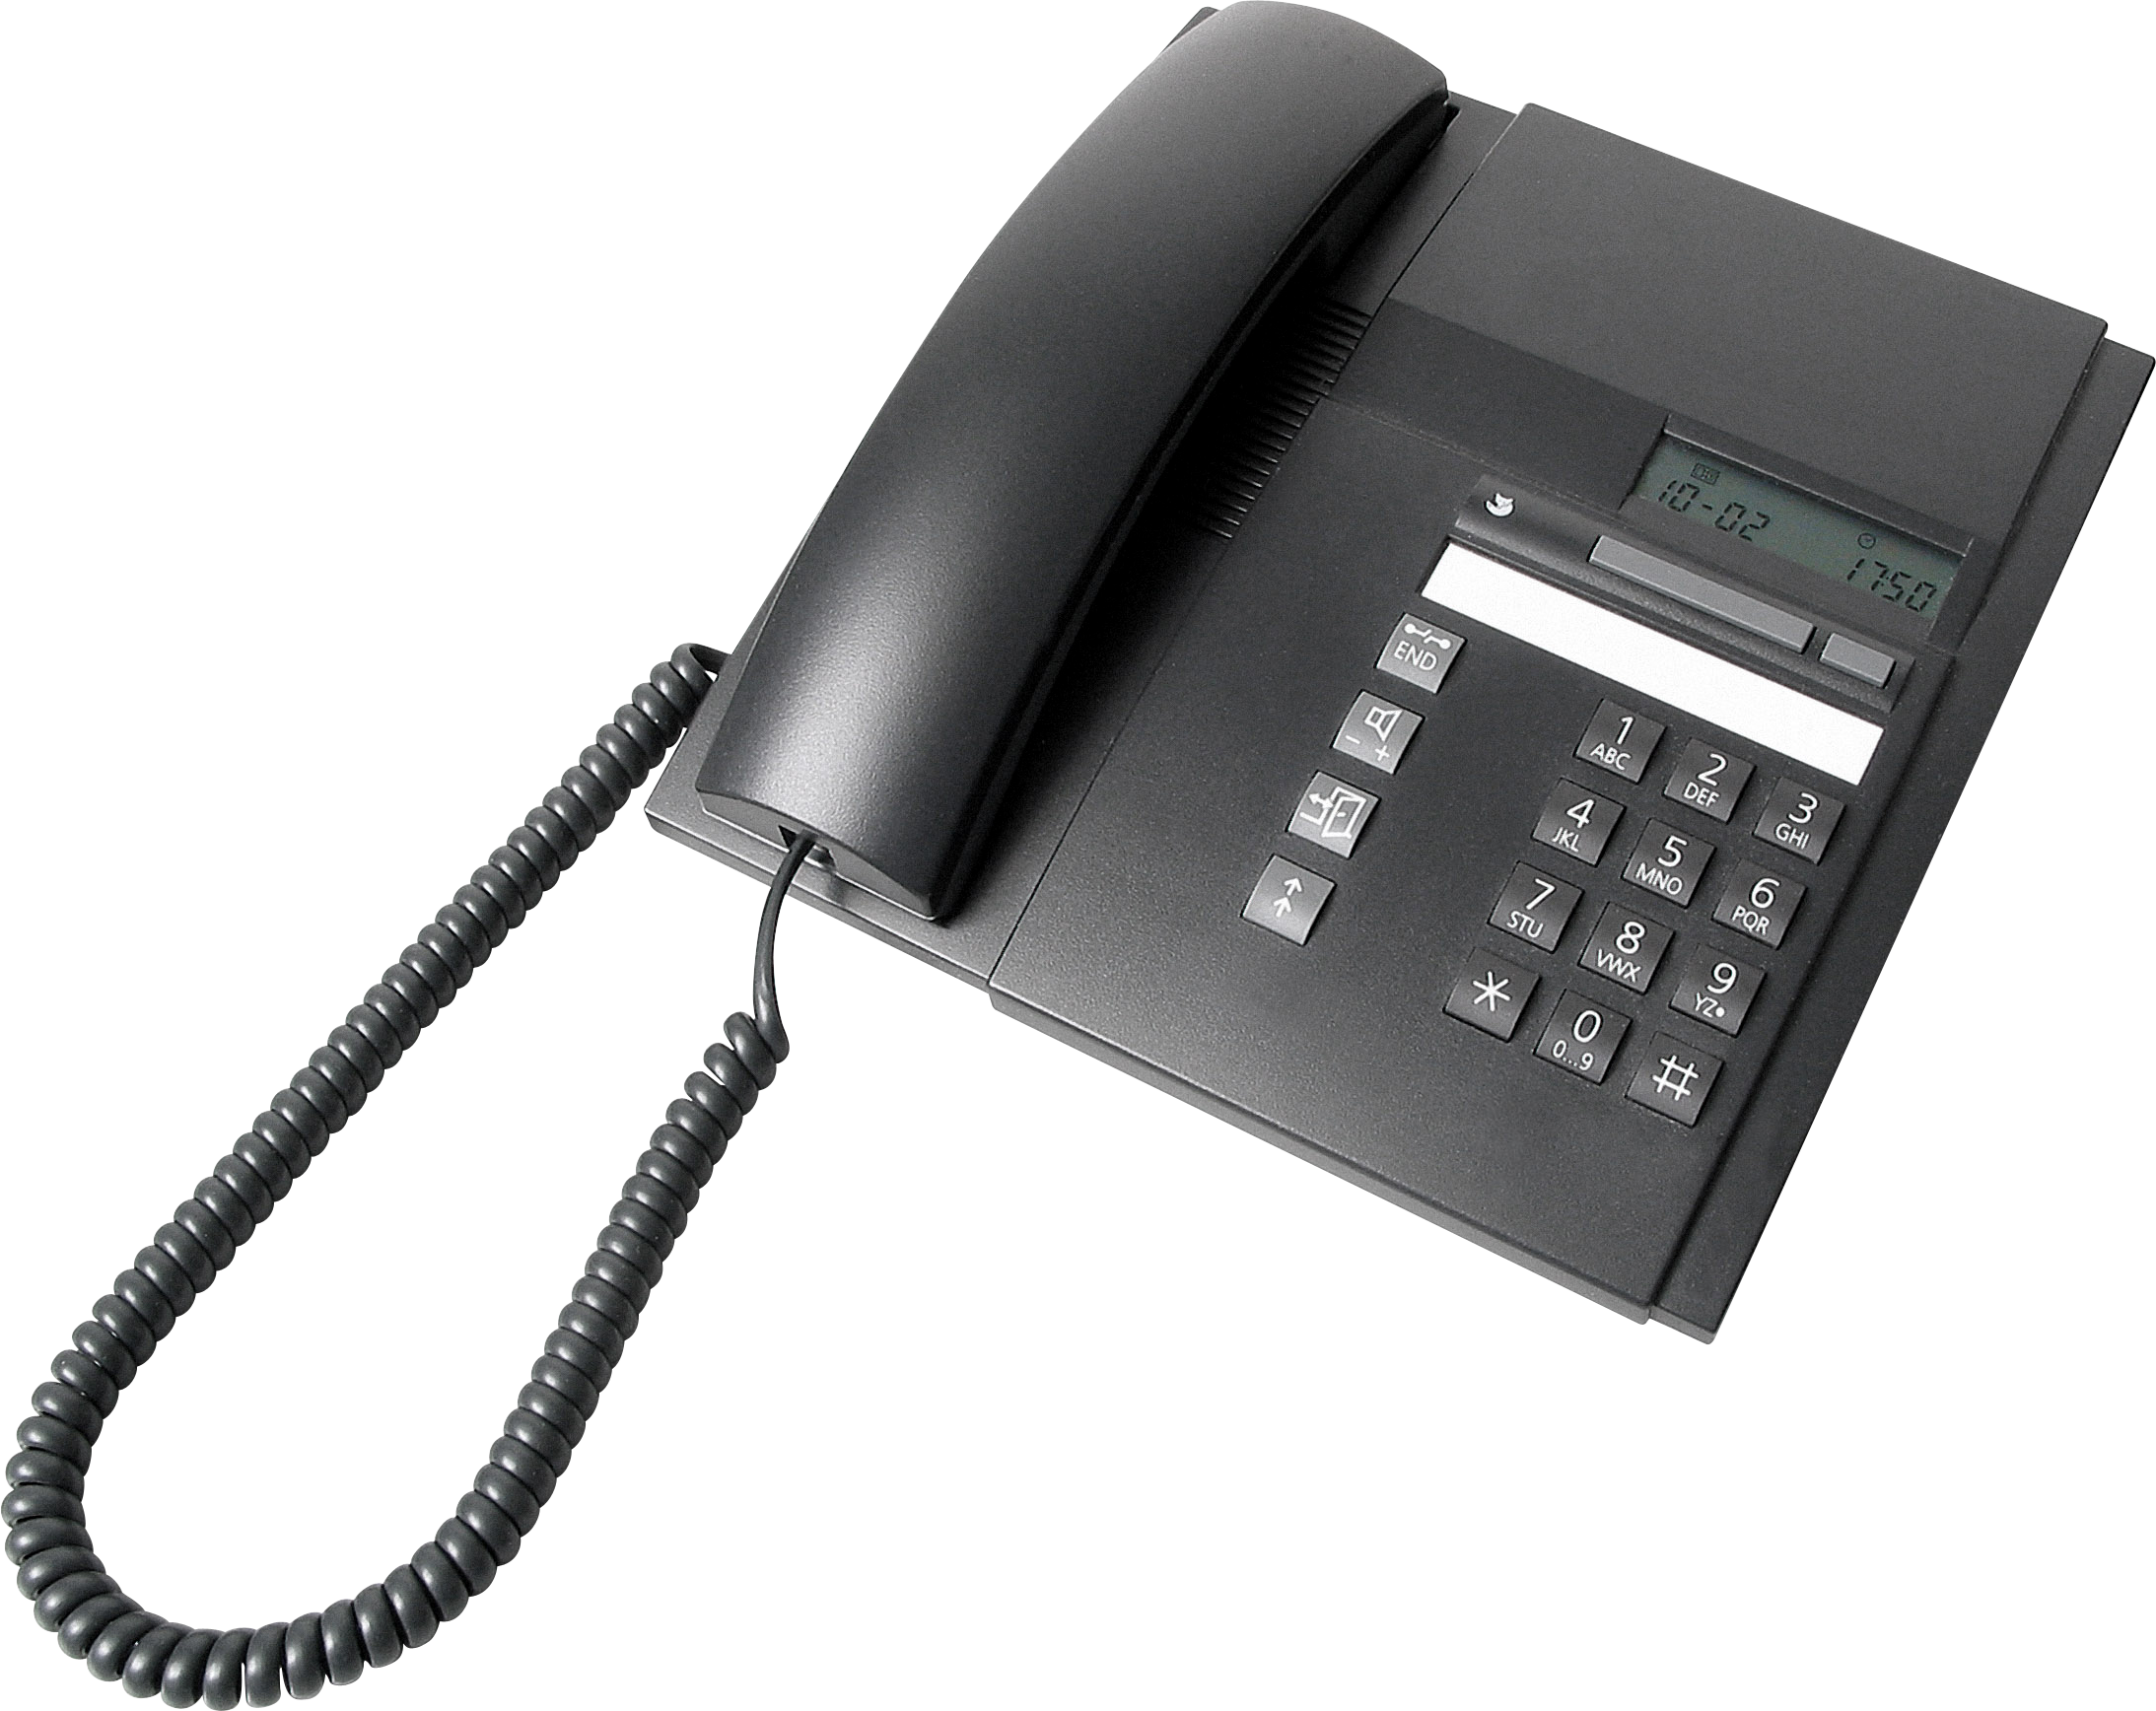 Картинки телефонных аппаратов. Системный телефонный аппарат OPTIPOINT 500 Advance Arctic Voice Box. Телефонный аппарат Комтел-736 АОН. Телефонный аппарат на прозрачном фоне. Старый проводной телефон.